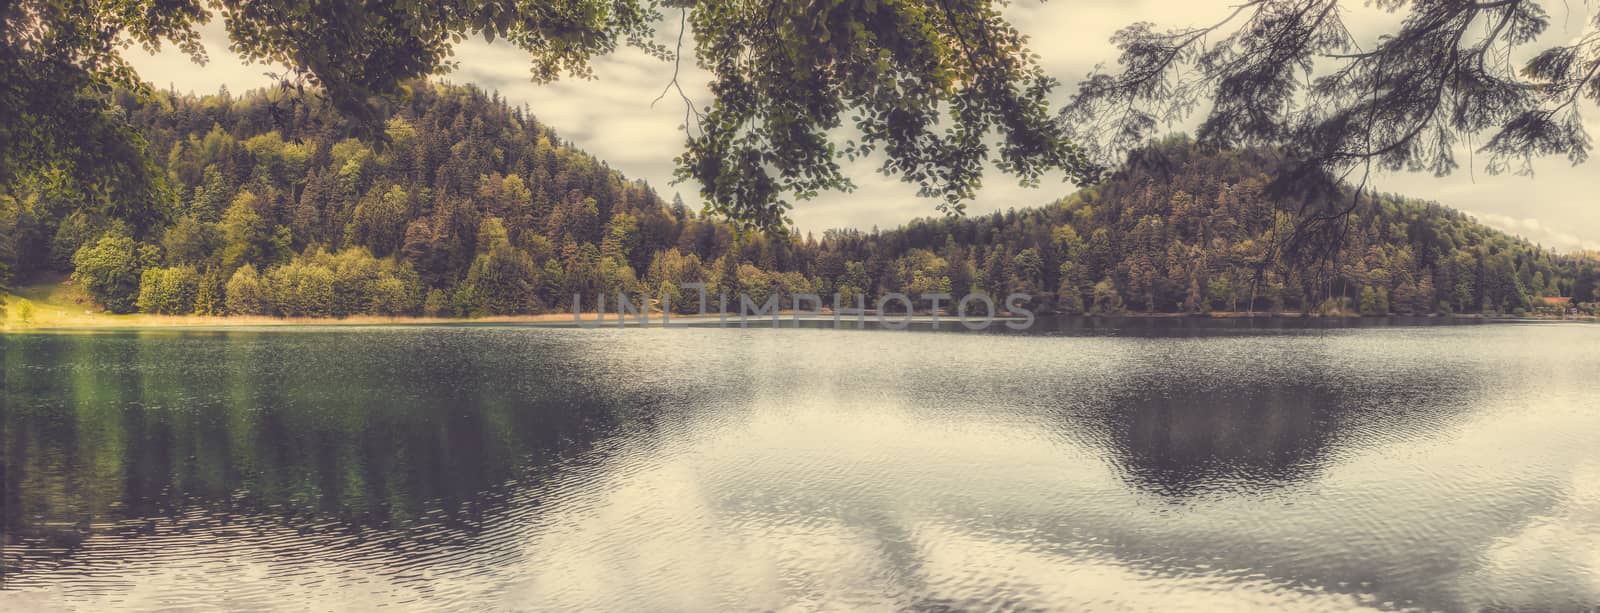 Panorama from lake alatsee in Füssen, Allgäu  by sandra_fotodesign